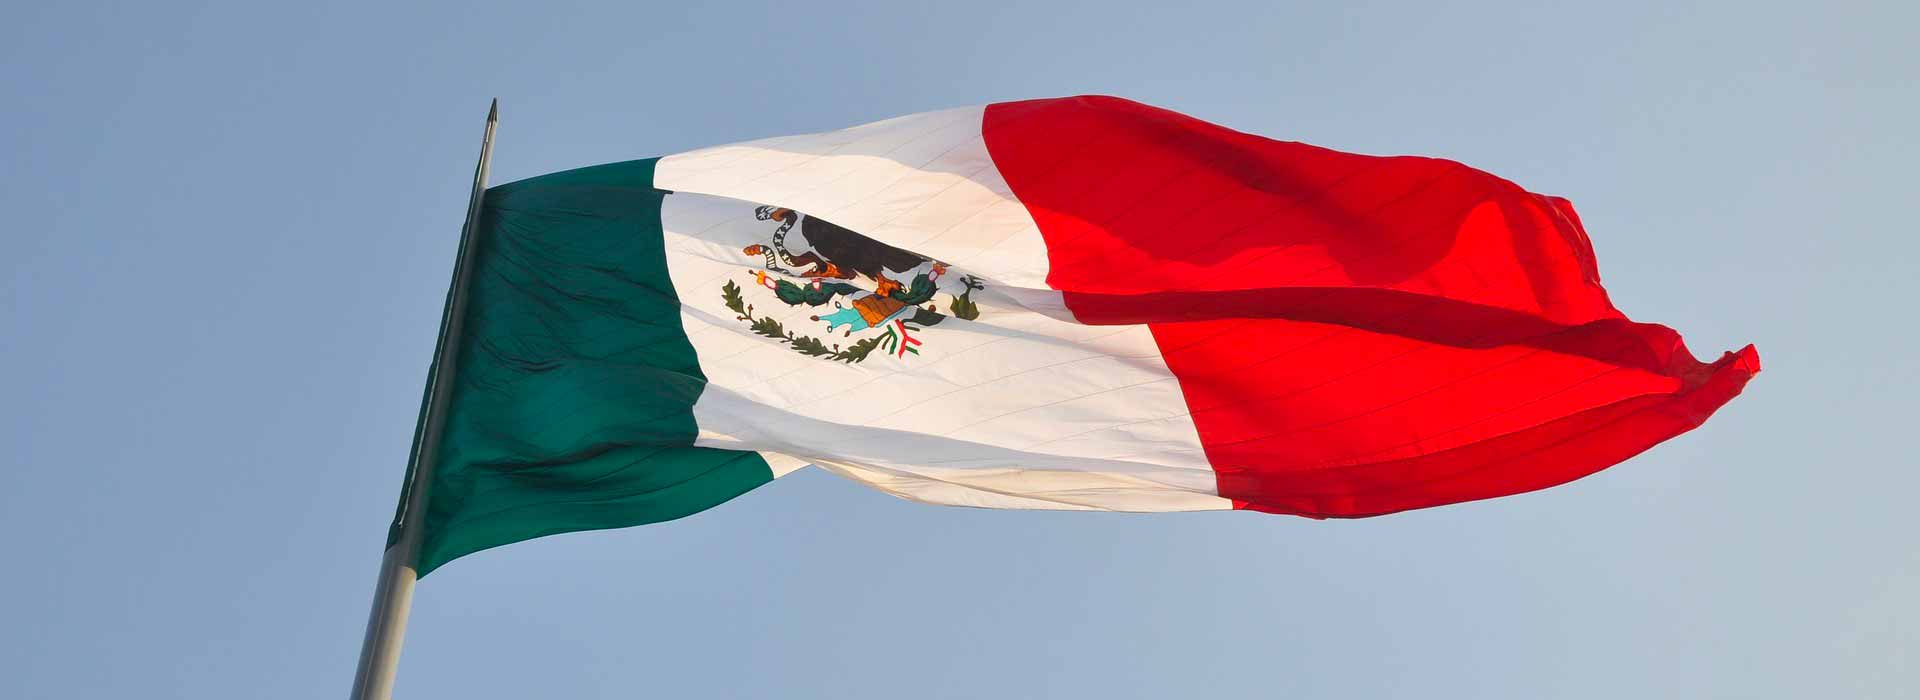 Messico: una banca centrale prudente...per validi motivi